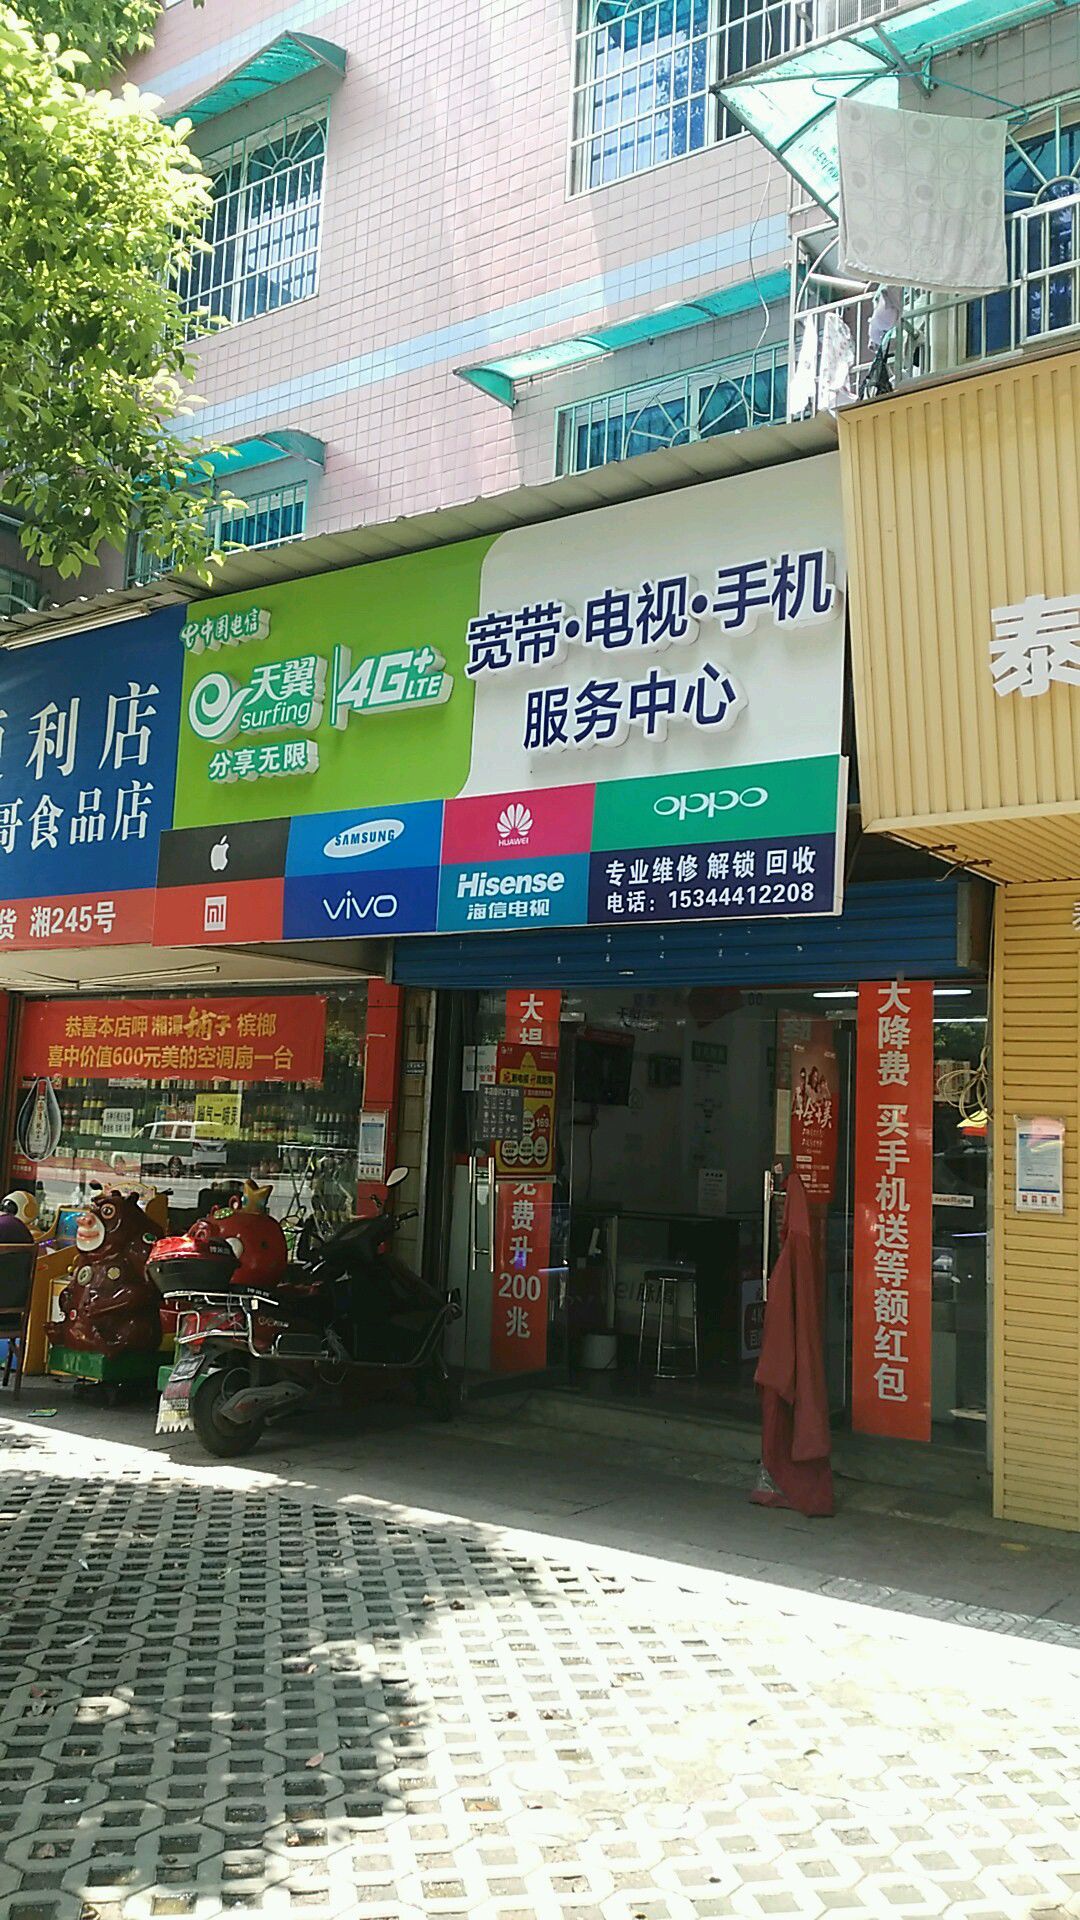 中國電信寬帶電視手機服務中心